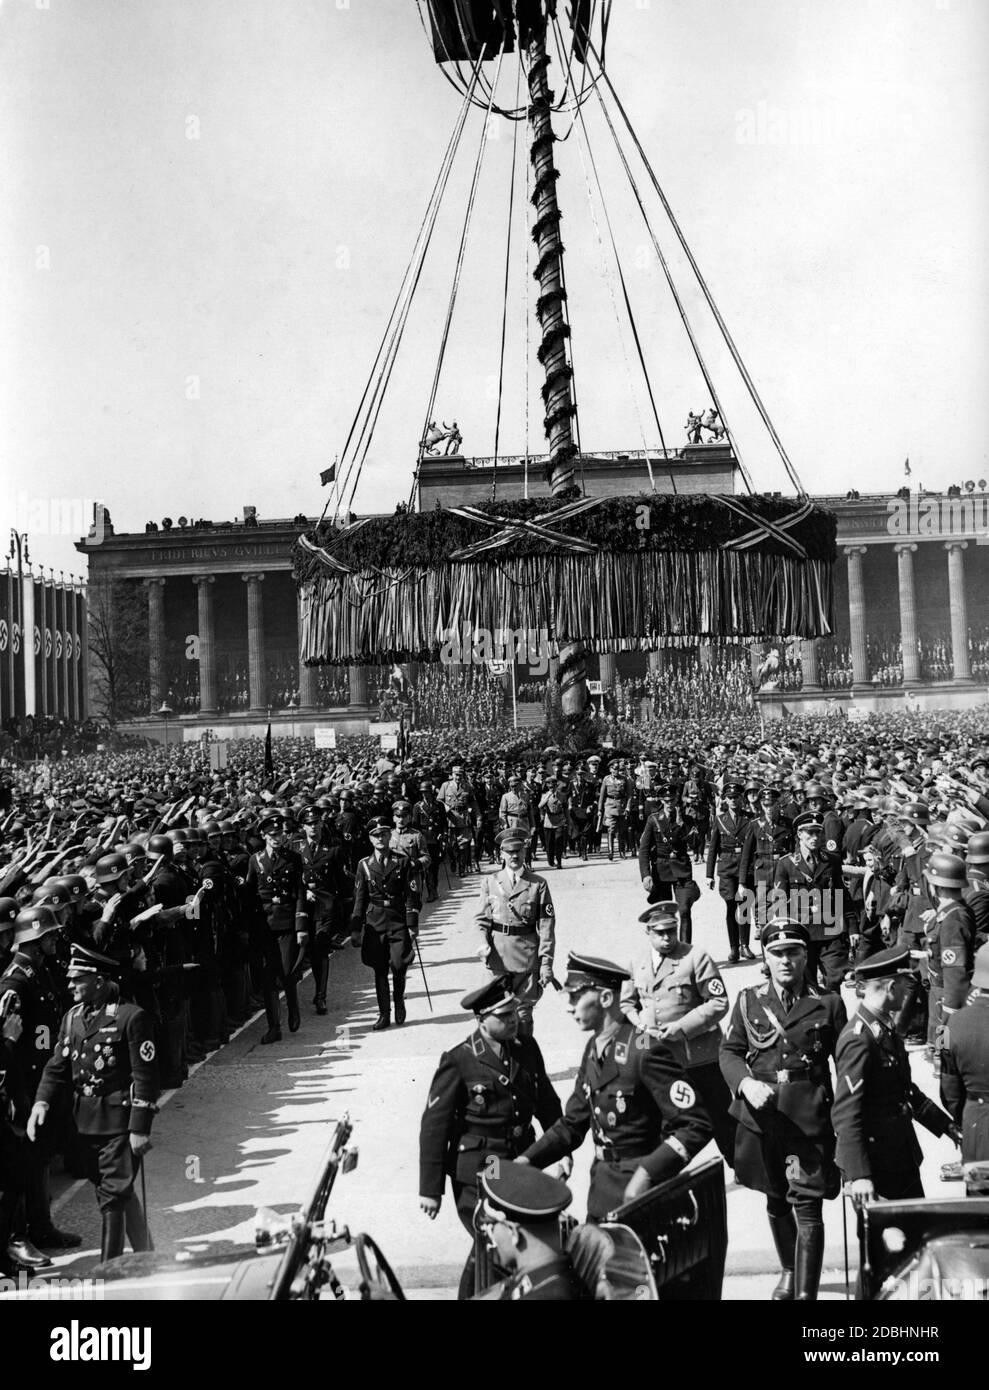 "Adolf Hitler verlässt nach seiner Rede den Berliner Lustgarten. Weiter vorne ist Martin Bormann. Die SS kann an ihrem Armband als Angehörige der Leibstandarte ''Adolf Hitler''' erkannt werden. Auf der linken Seite des Bildes ist ihr Kommandant Sepp Dietrich." Stockfoto